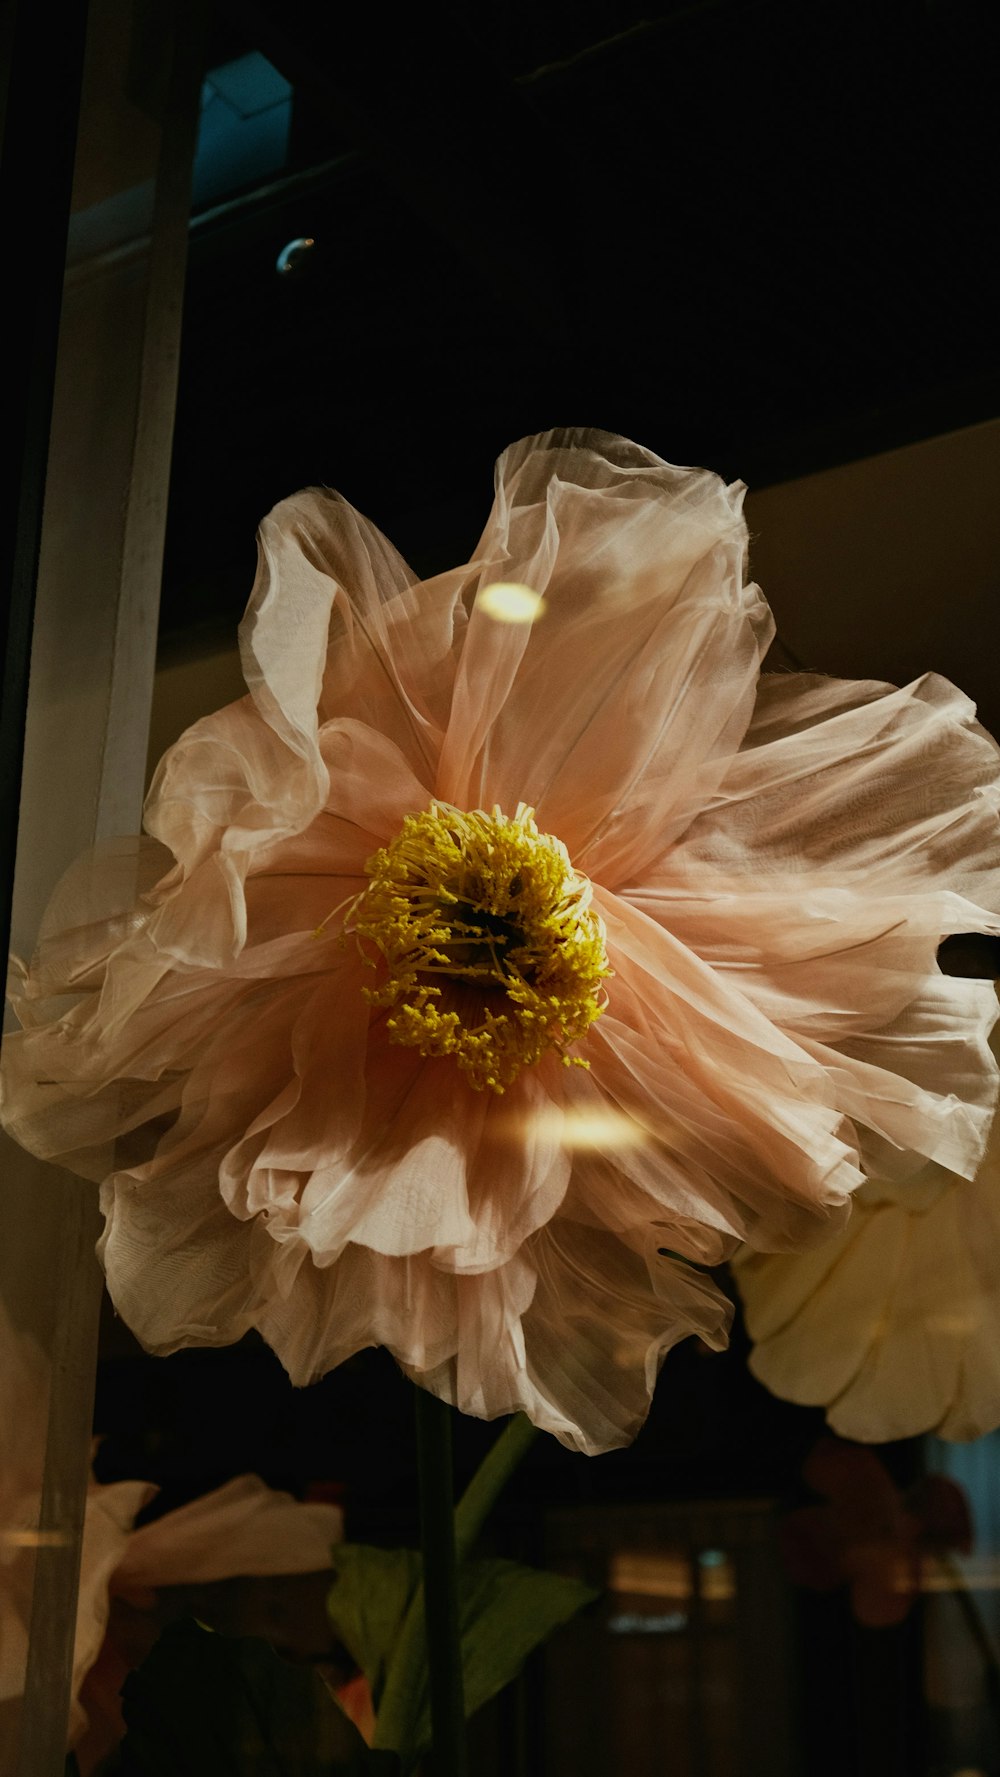 gros plan d’une fleur dans un vase